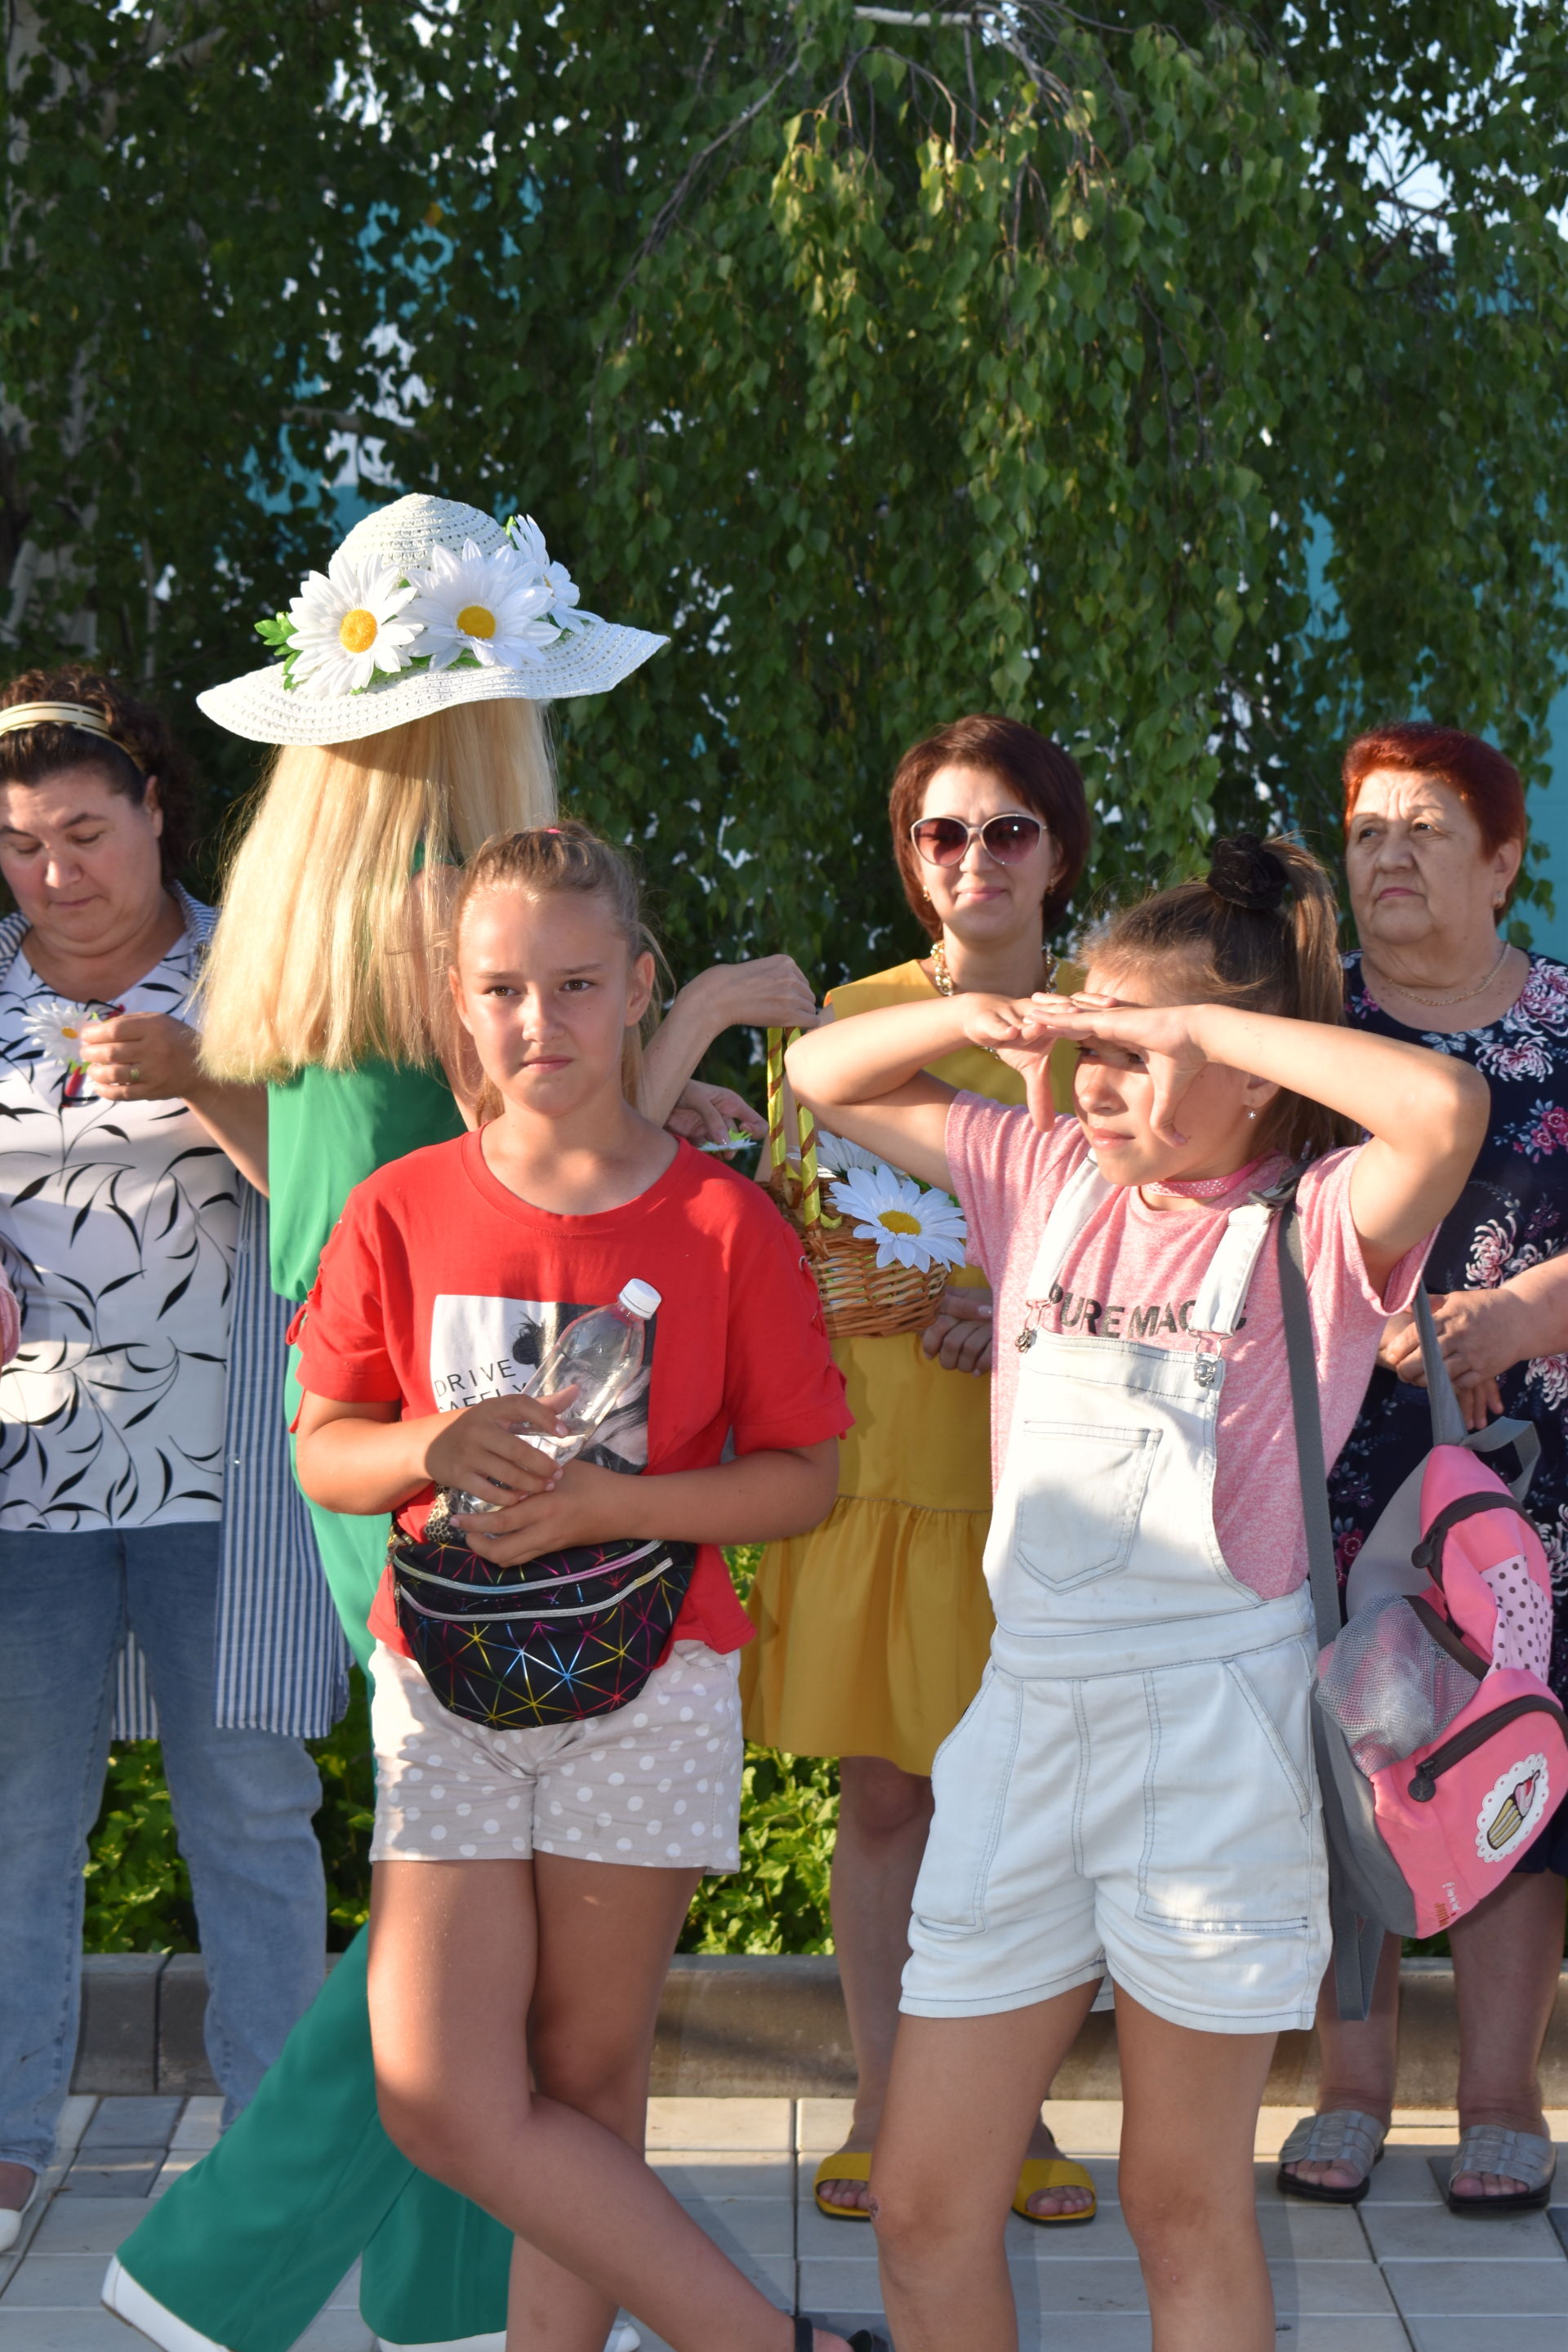 В Камских Полянах прошел красивый праздник - День семьи (ФОТО)